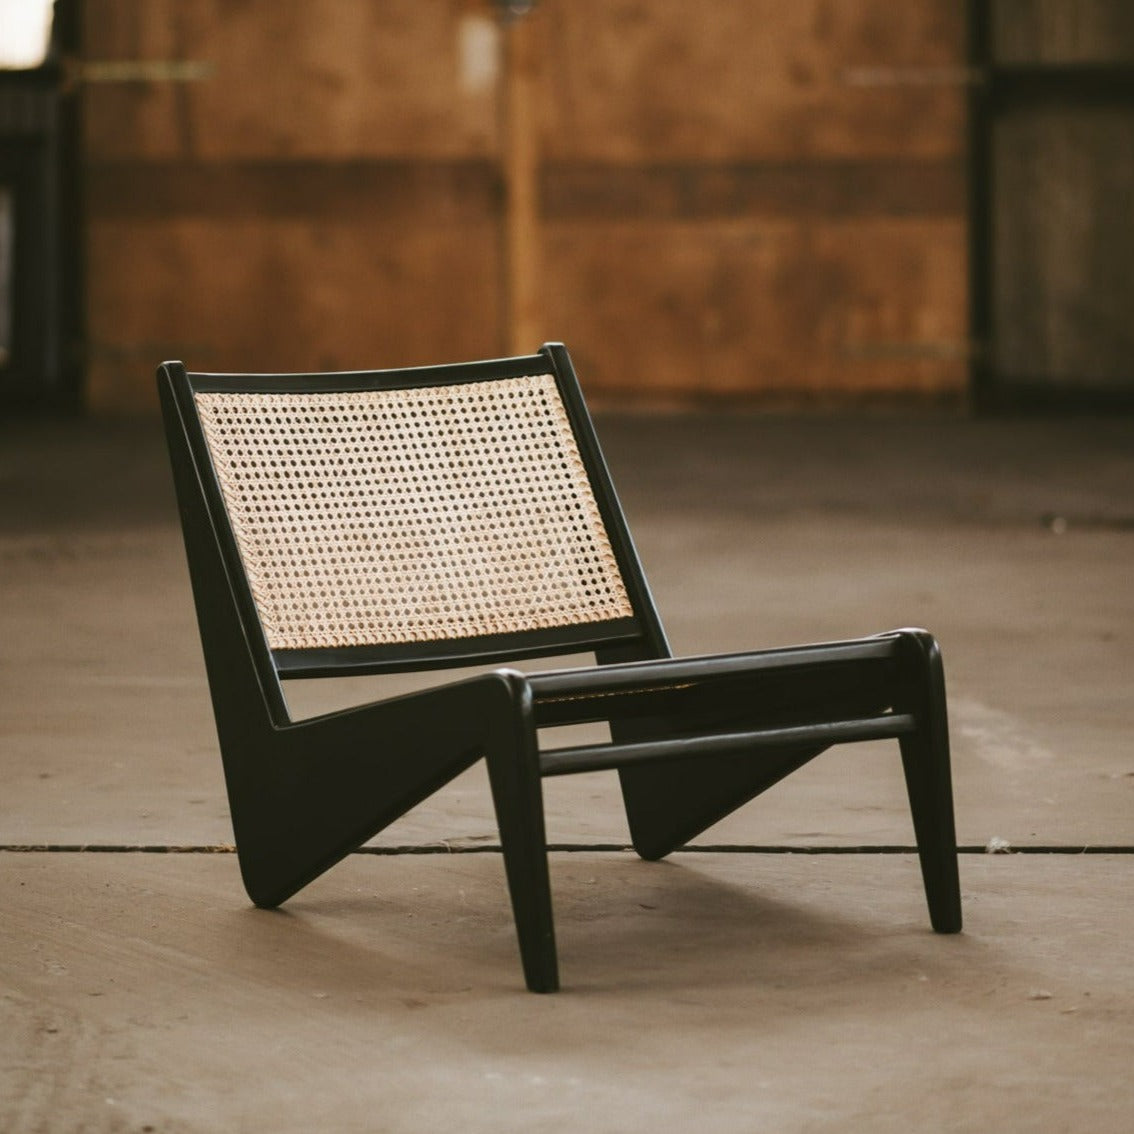 Detjer "Kangaroo Chair" - Black teak